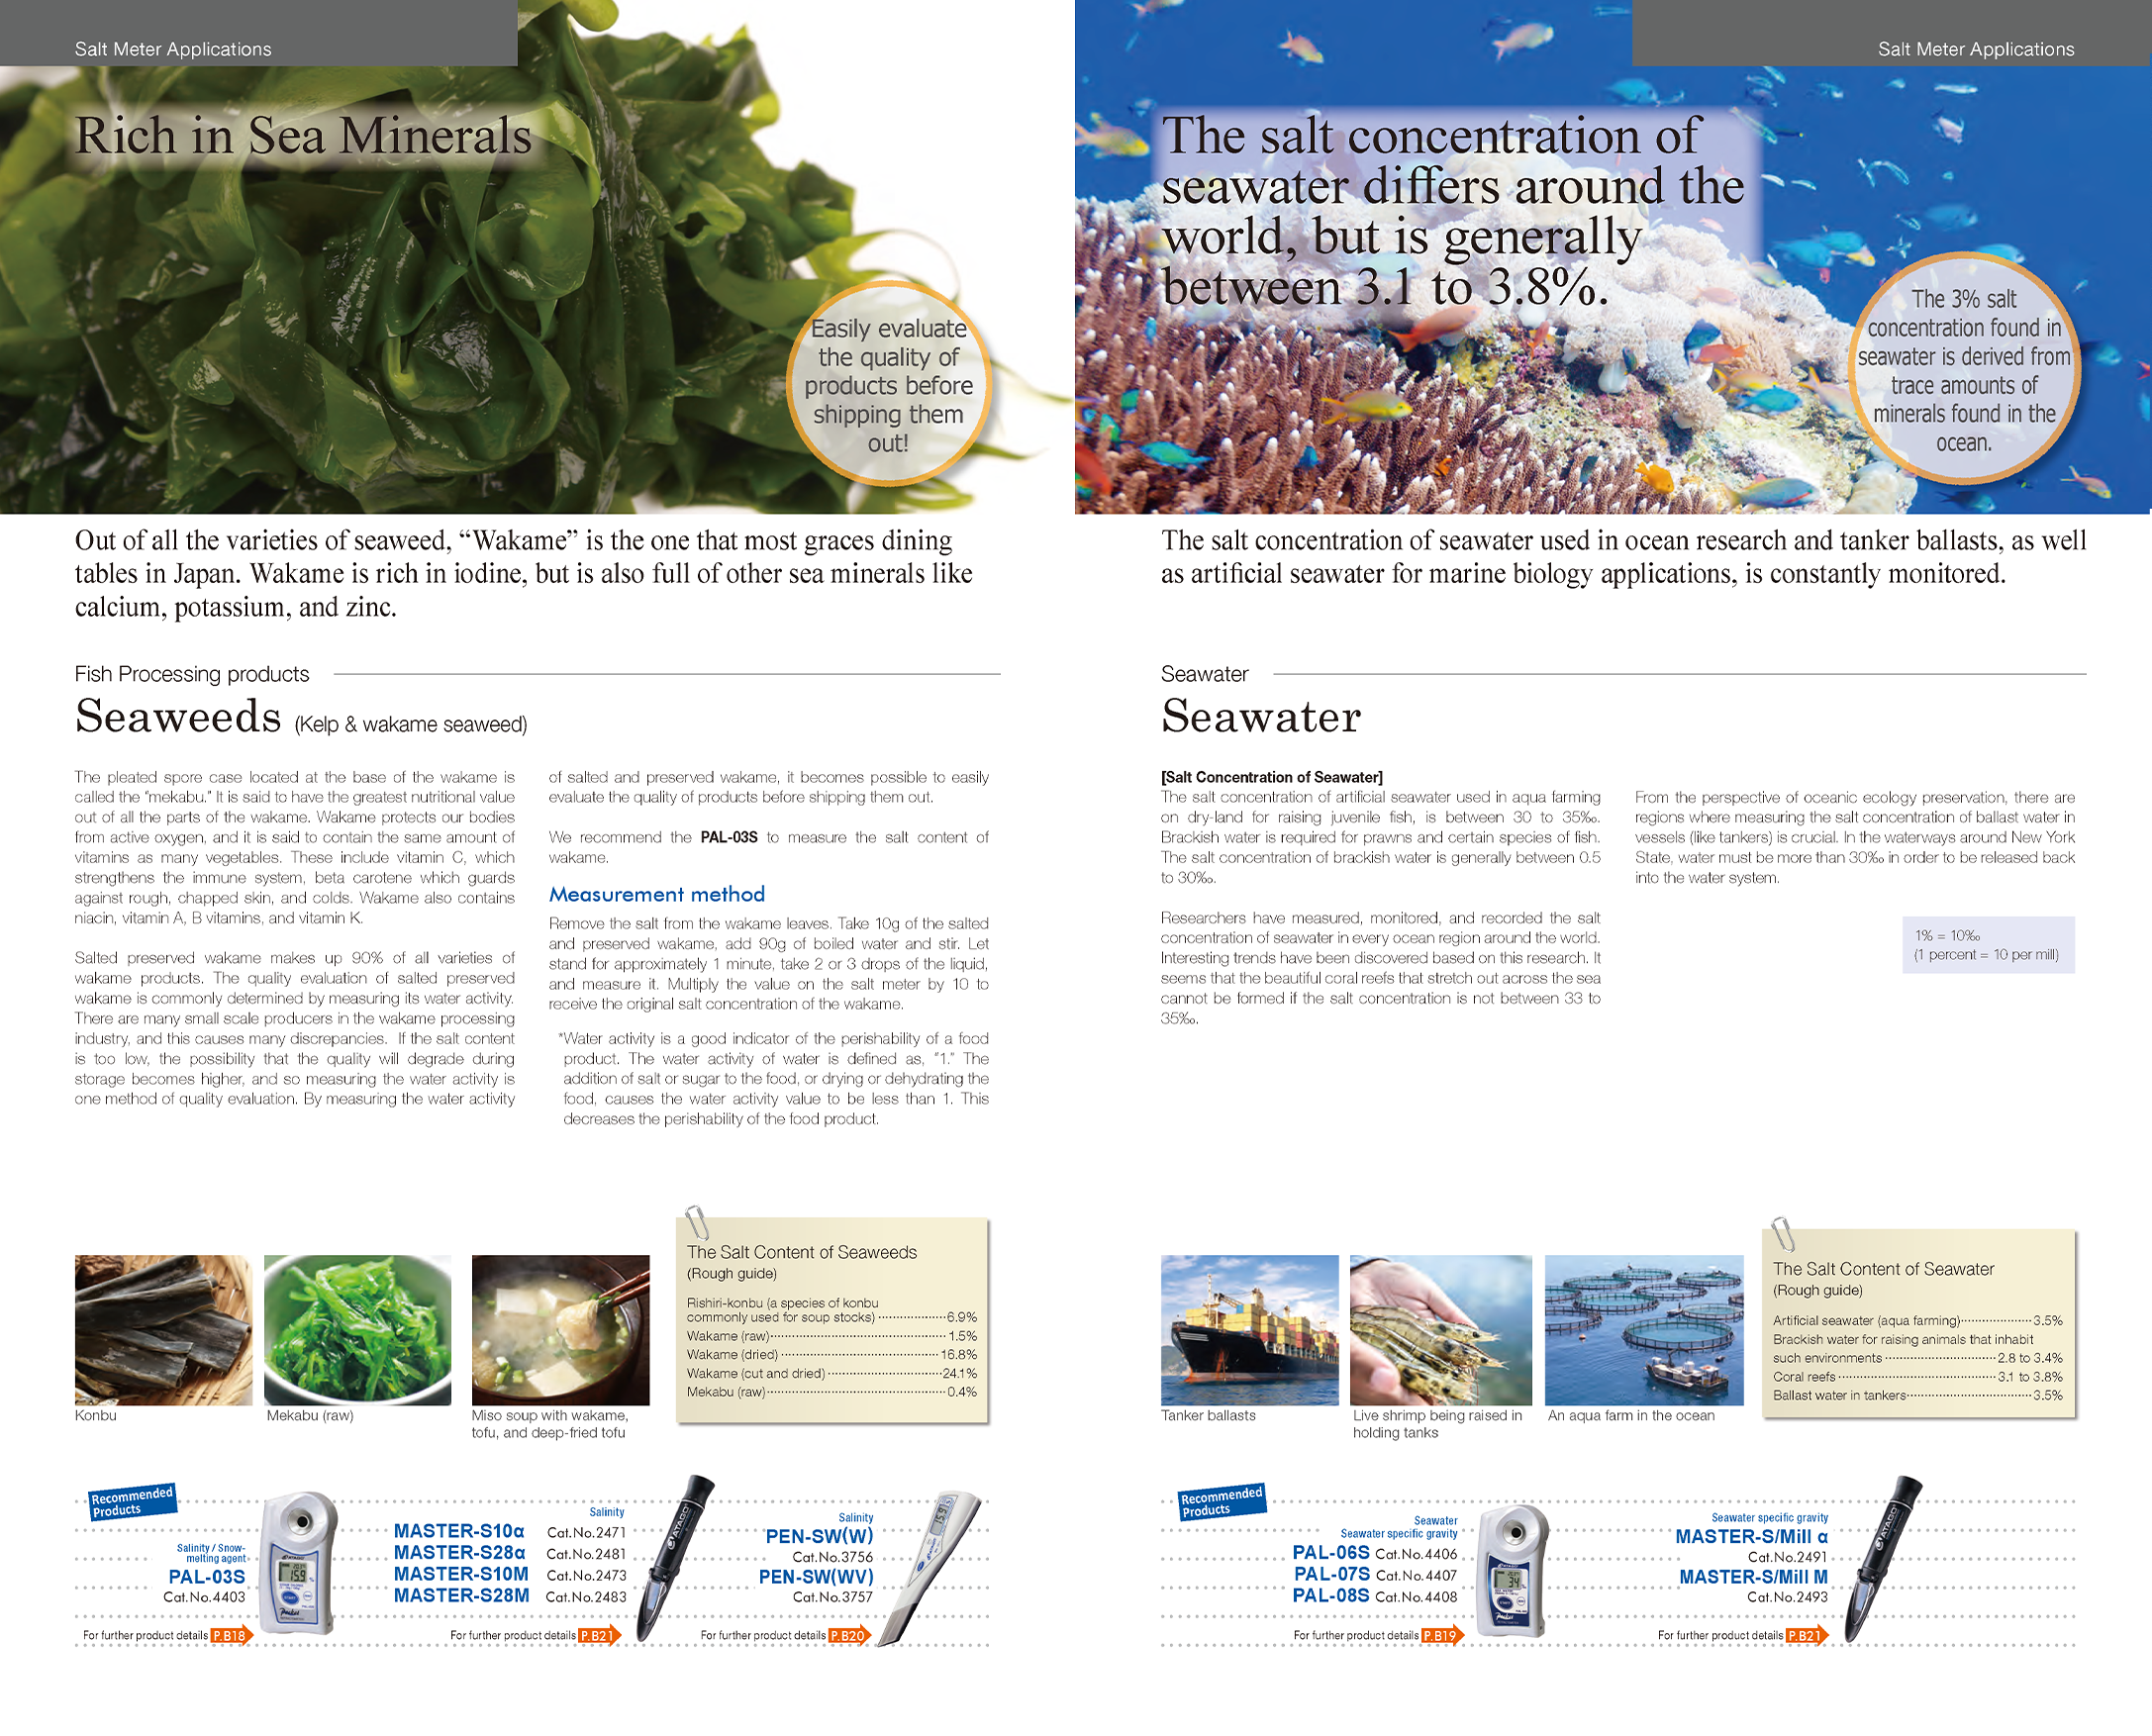 Seaweeds (Kelp & wakame seaweed) / Seawater